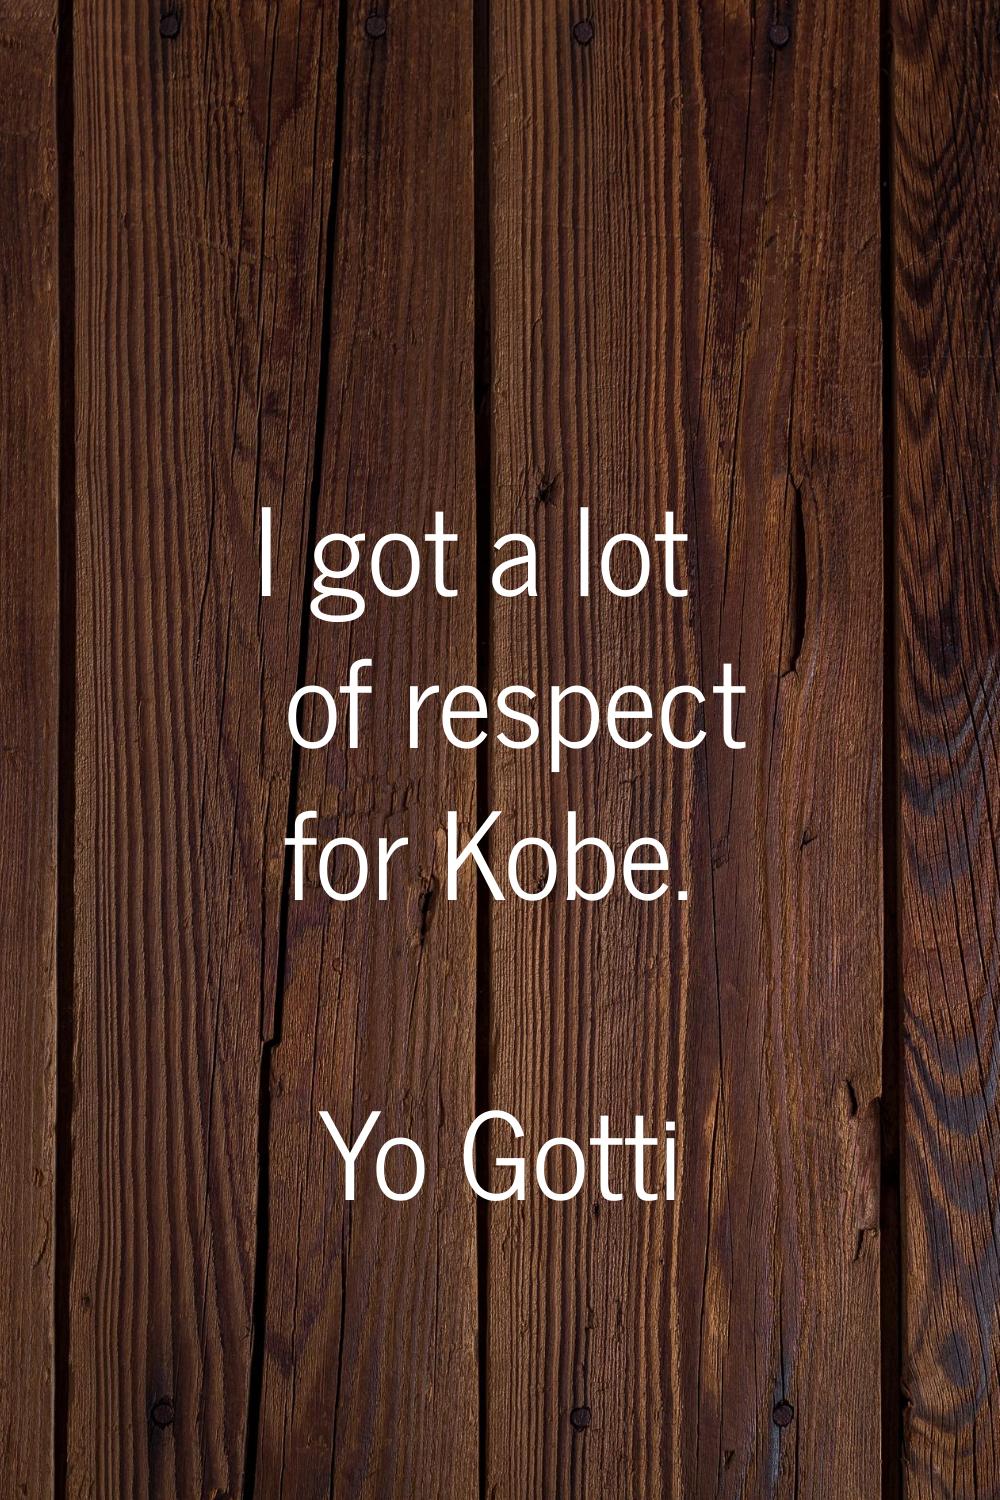 I got a lot of respect for Kobe.